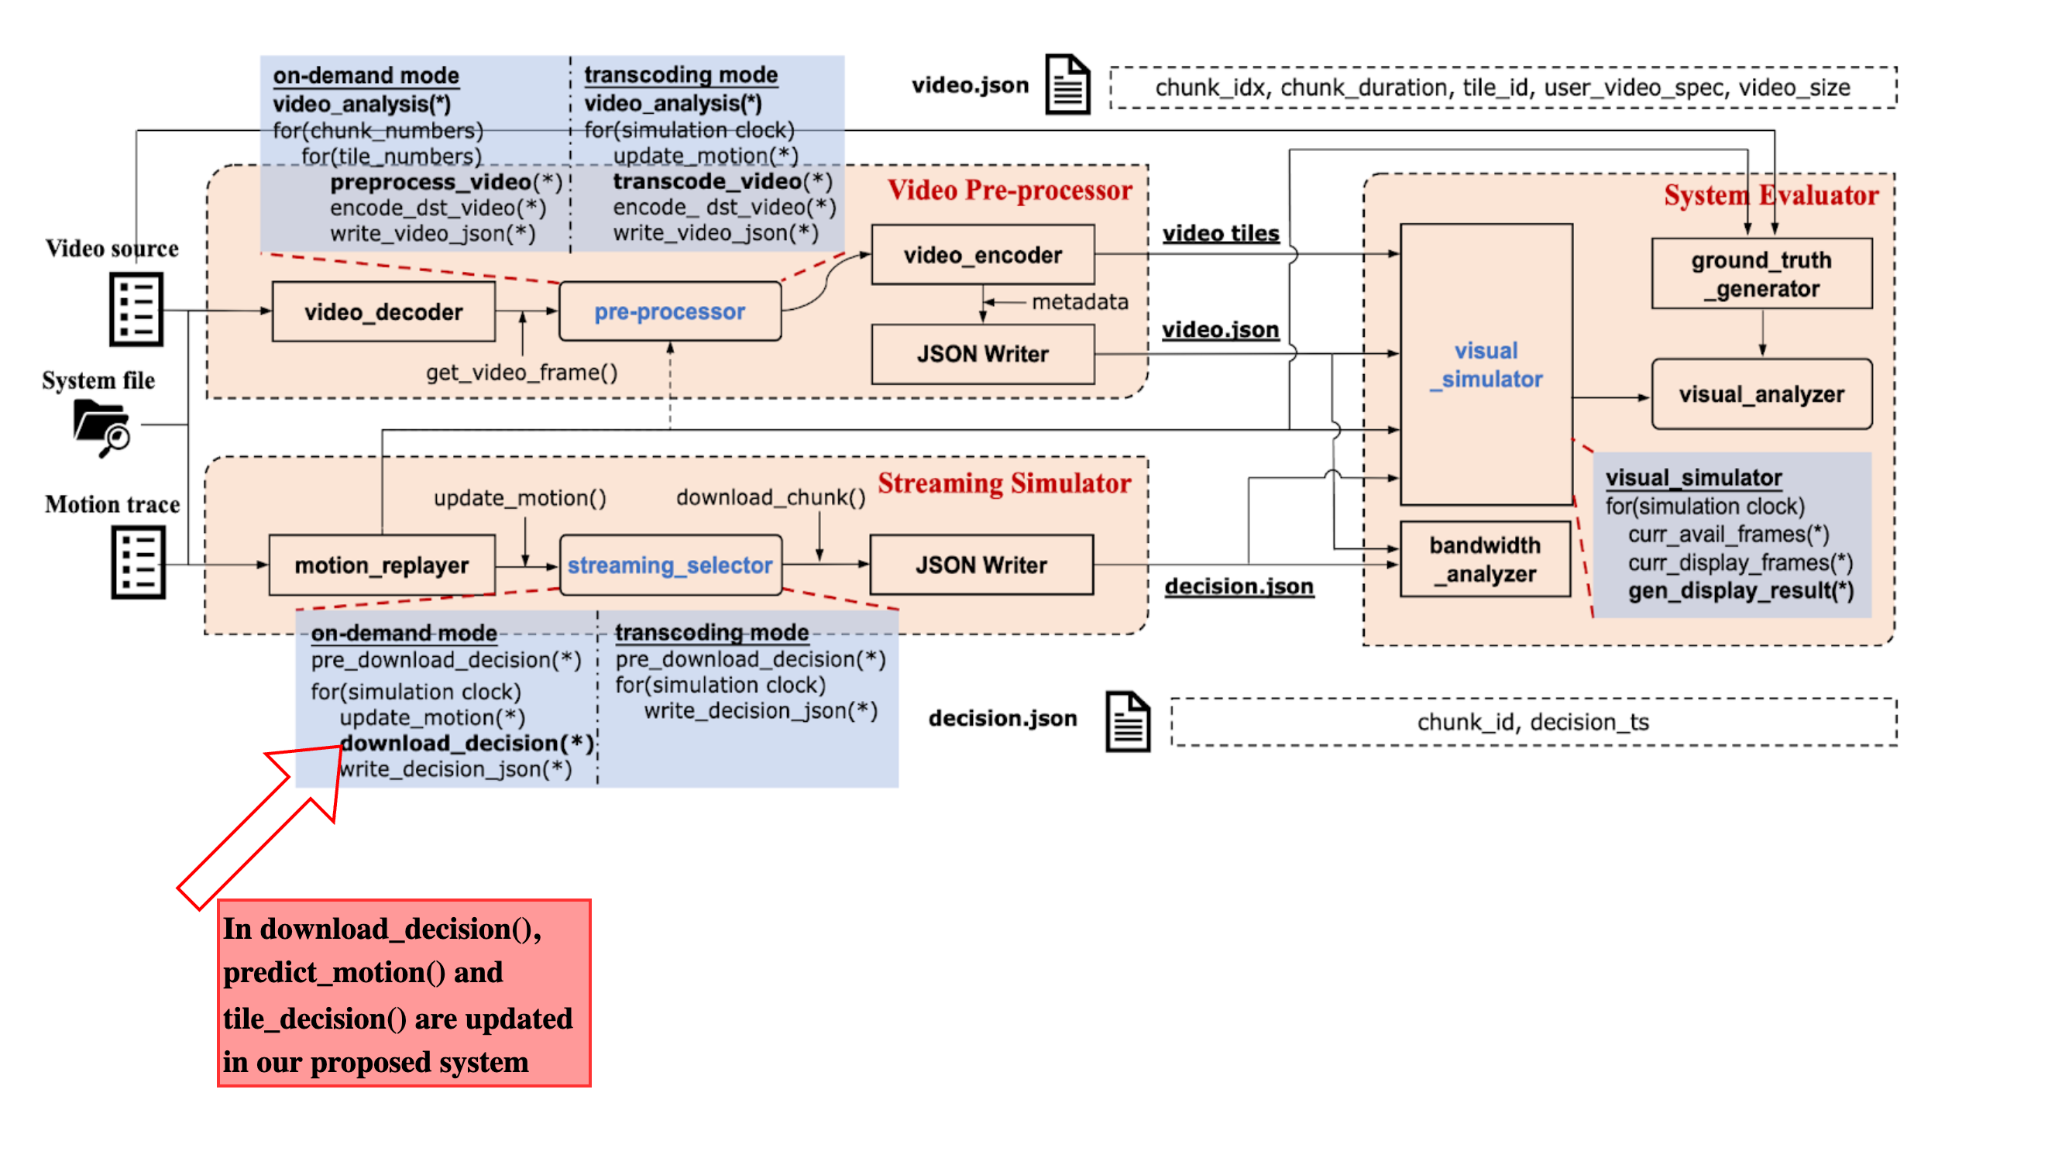 e3po system architecture, modified